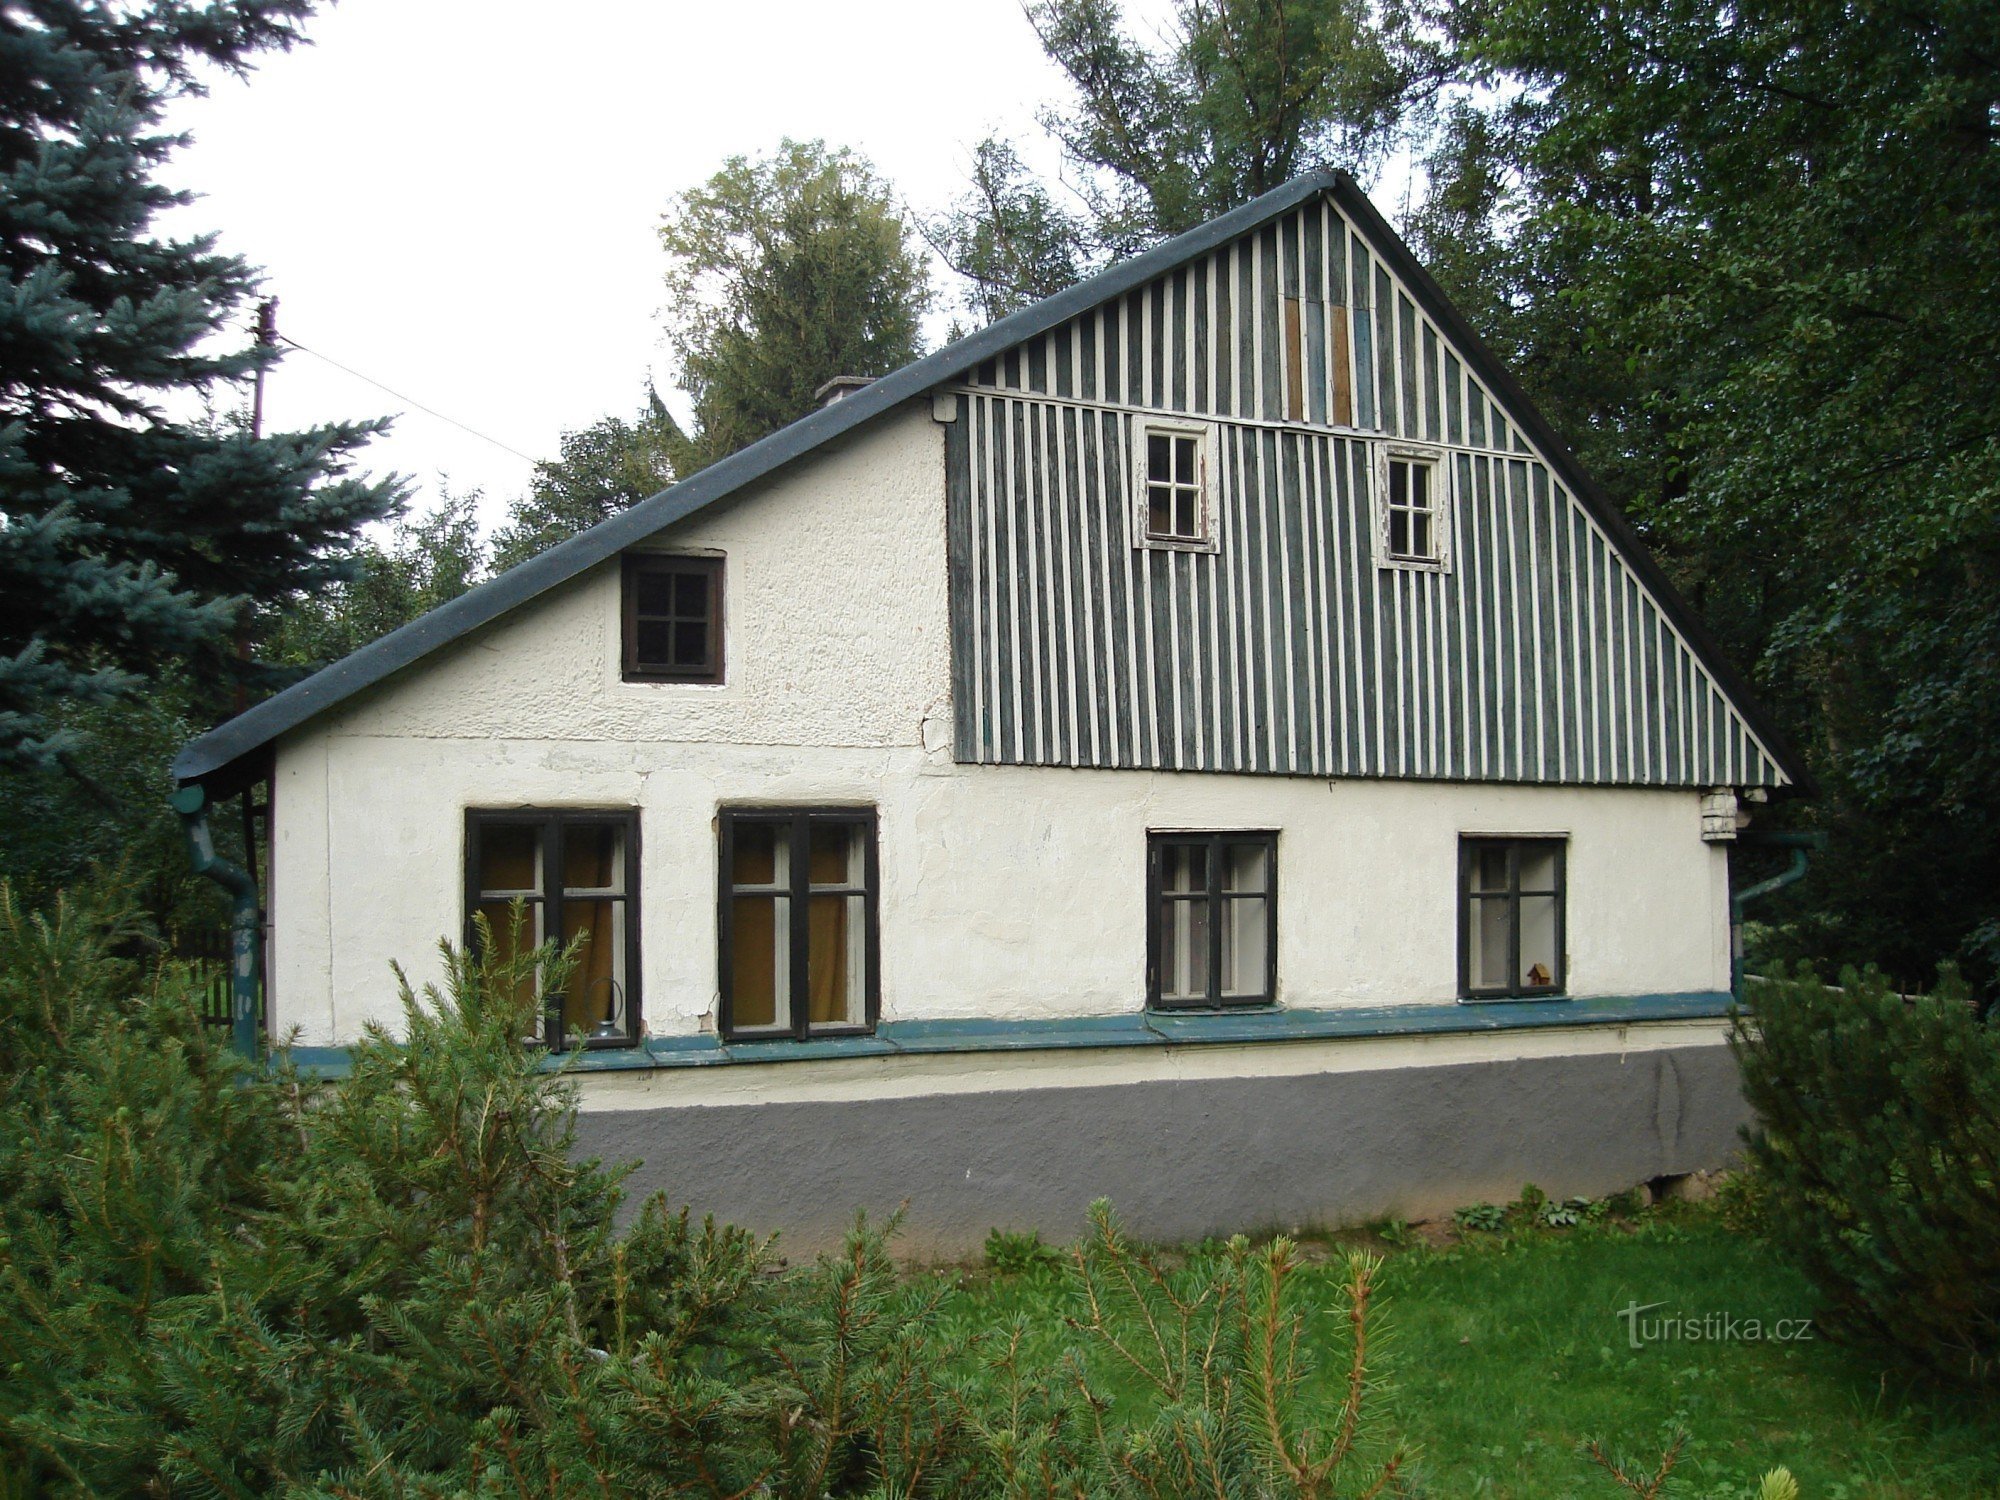 Domek, kde žil Bohumil Hanč